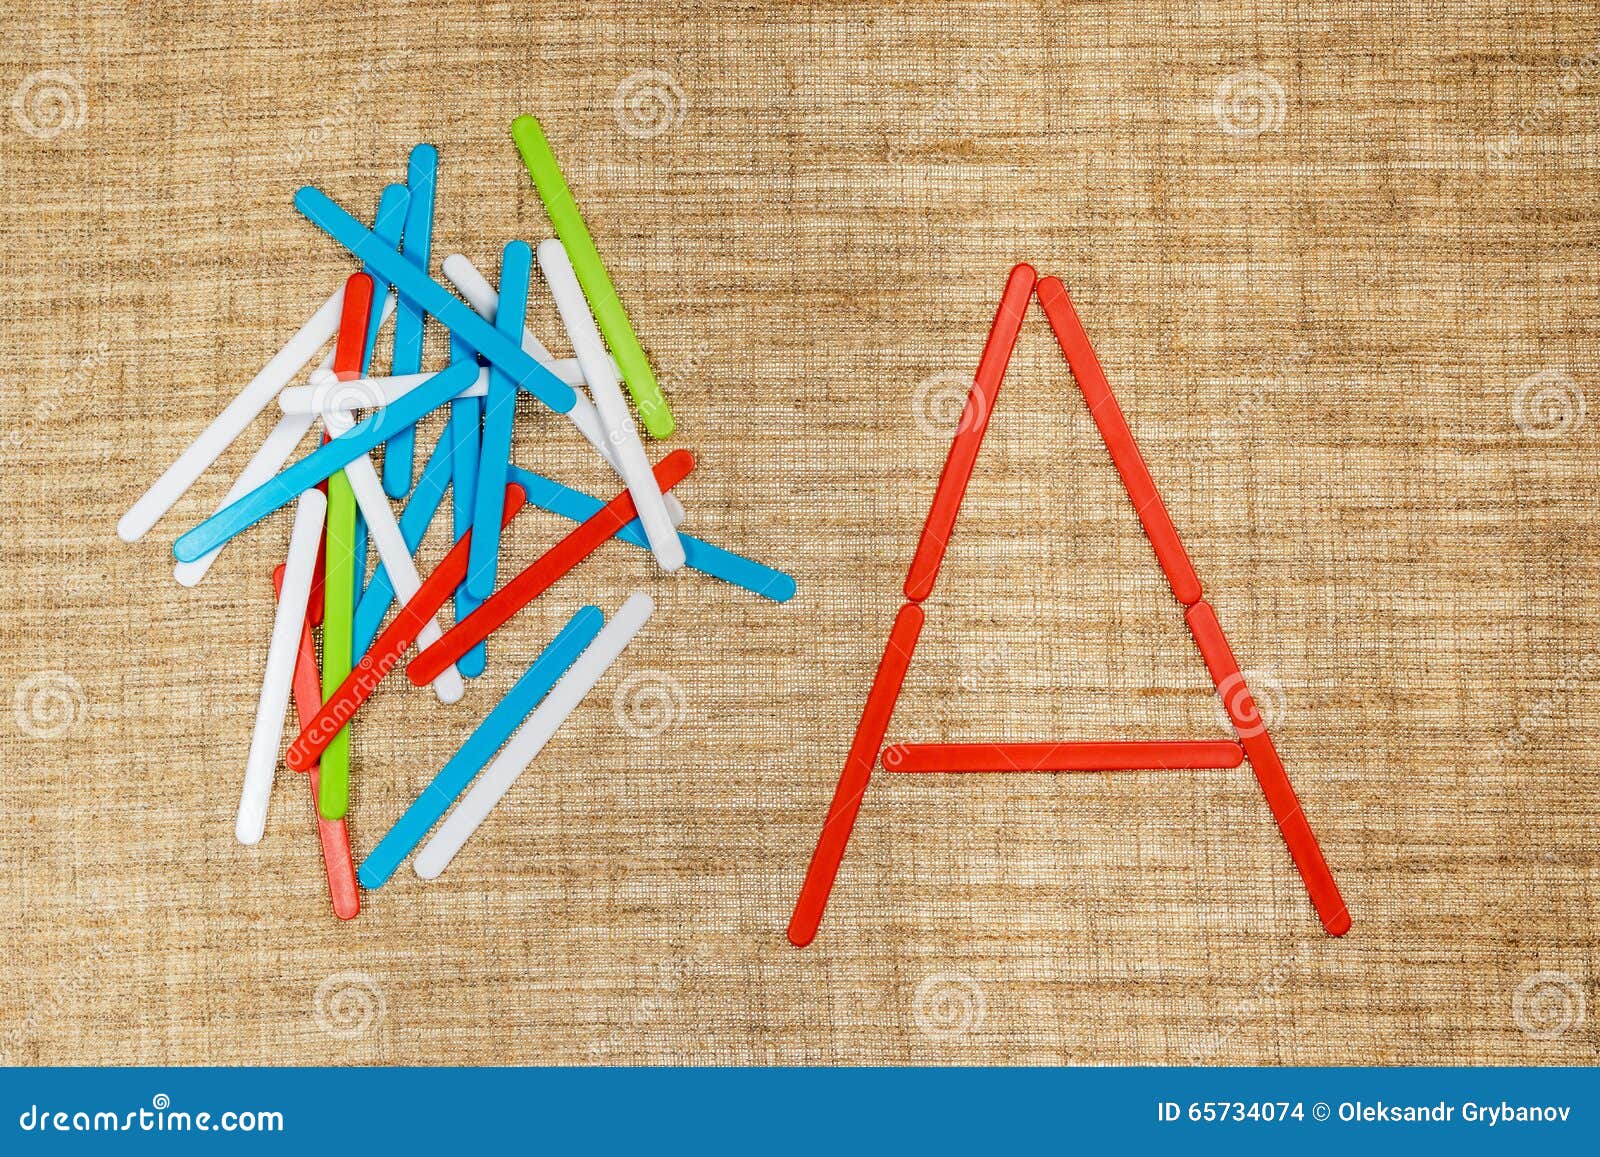 Алфавит буквы с палочками. Буквы из палочек. Буквы из палочек для детей. Выкладываем буквы из палочек. Сложи букву из палочек.